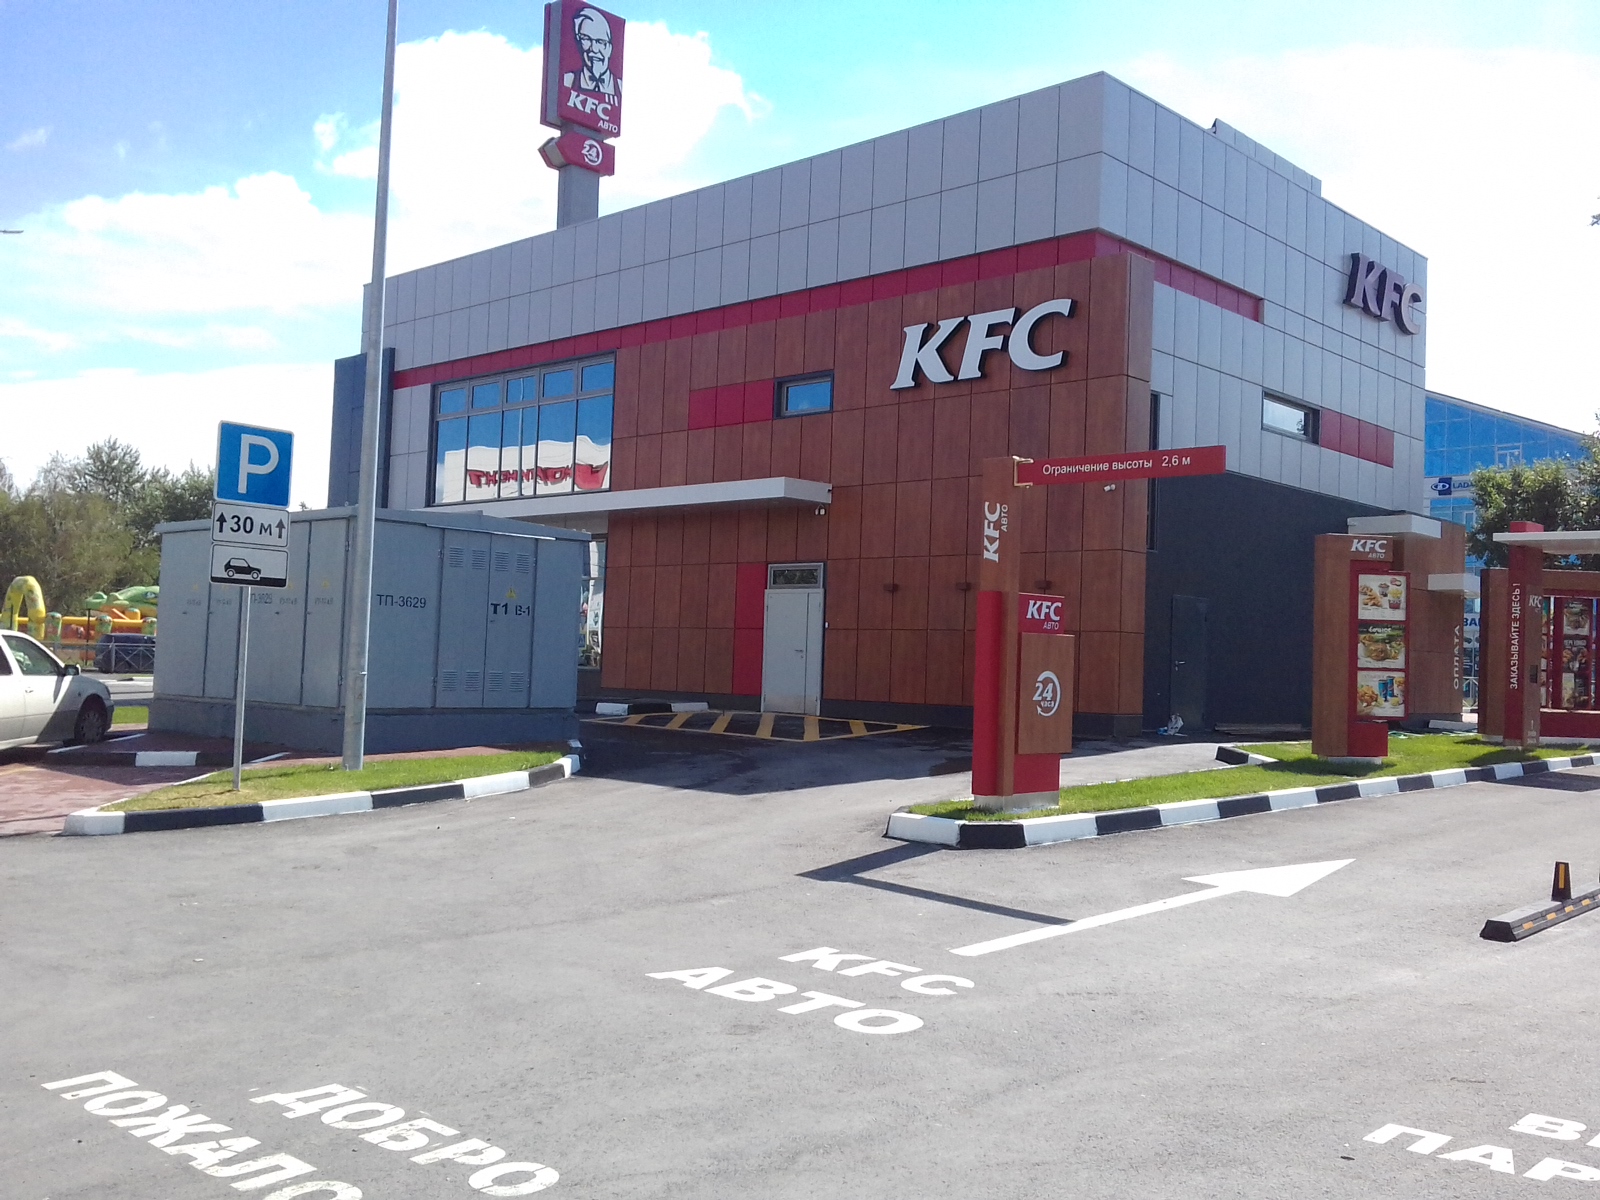 Ресторан KFC по ул. Троллейная в г. Новосибирске